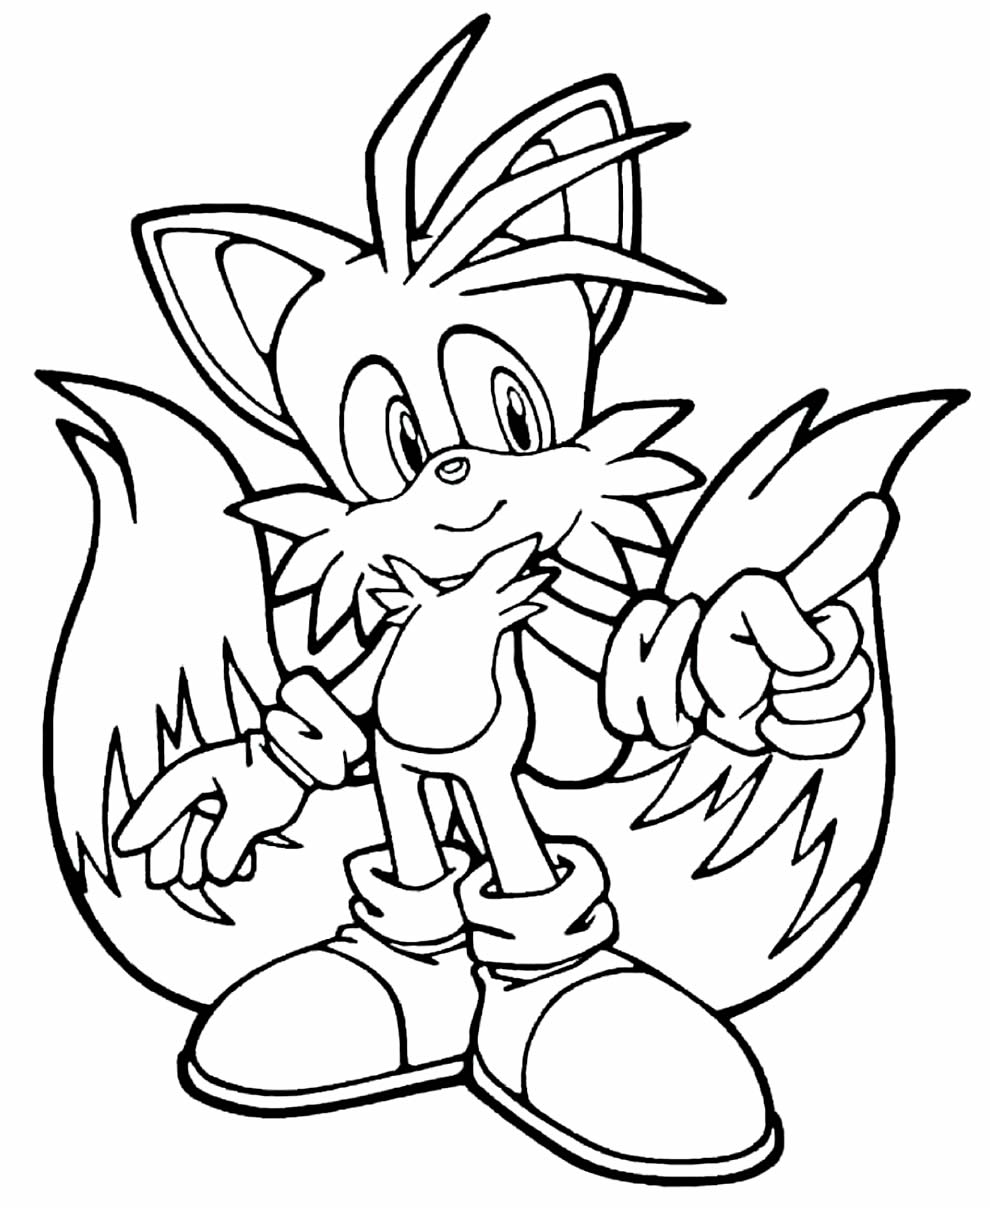 Imagem do Sonic para pintar